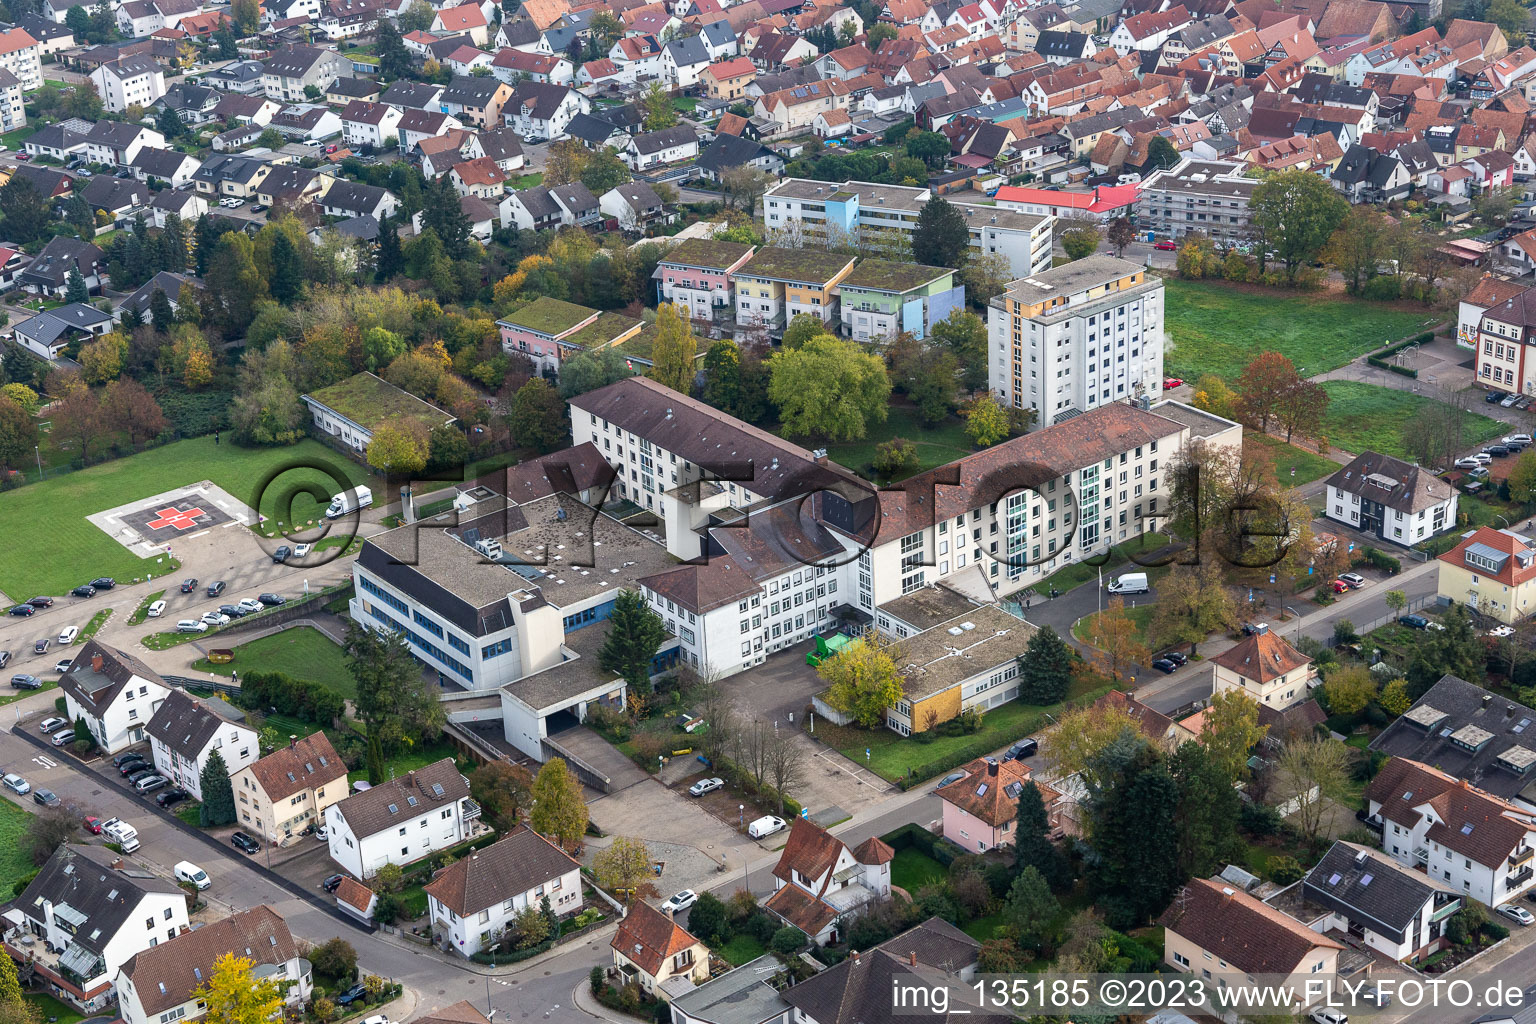 Luftbild von Asklepius Krankenhaus in Kandel im Bundesland Rheinland-Pfalz, Deutschland